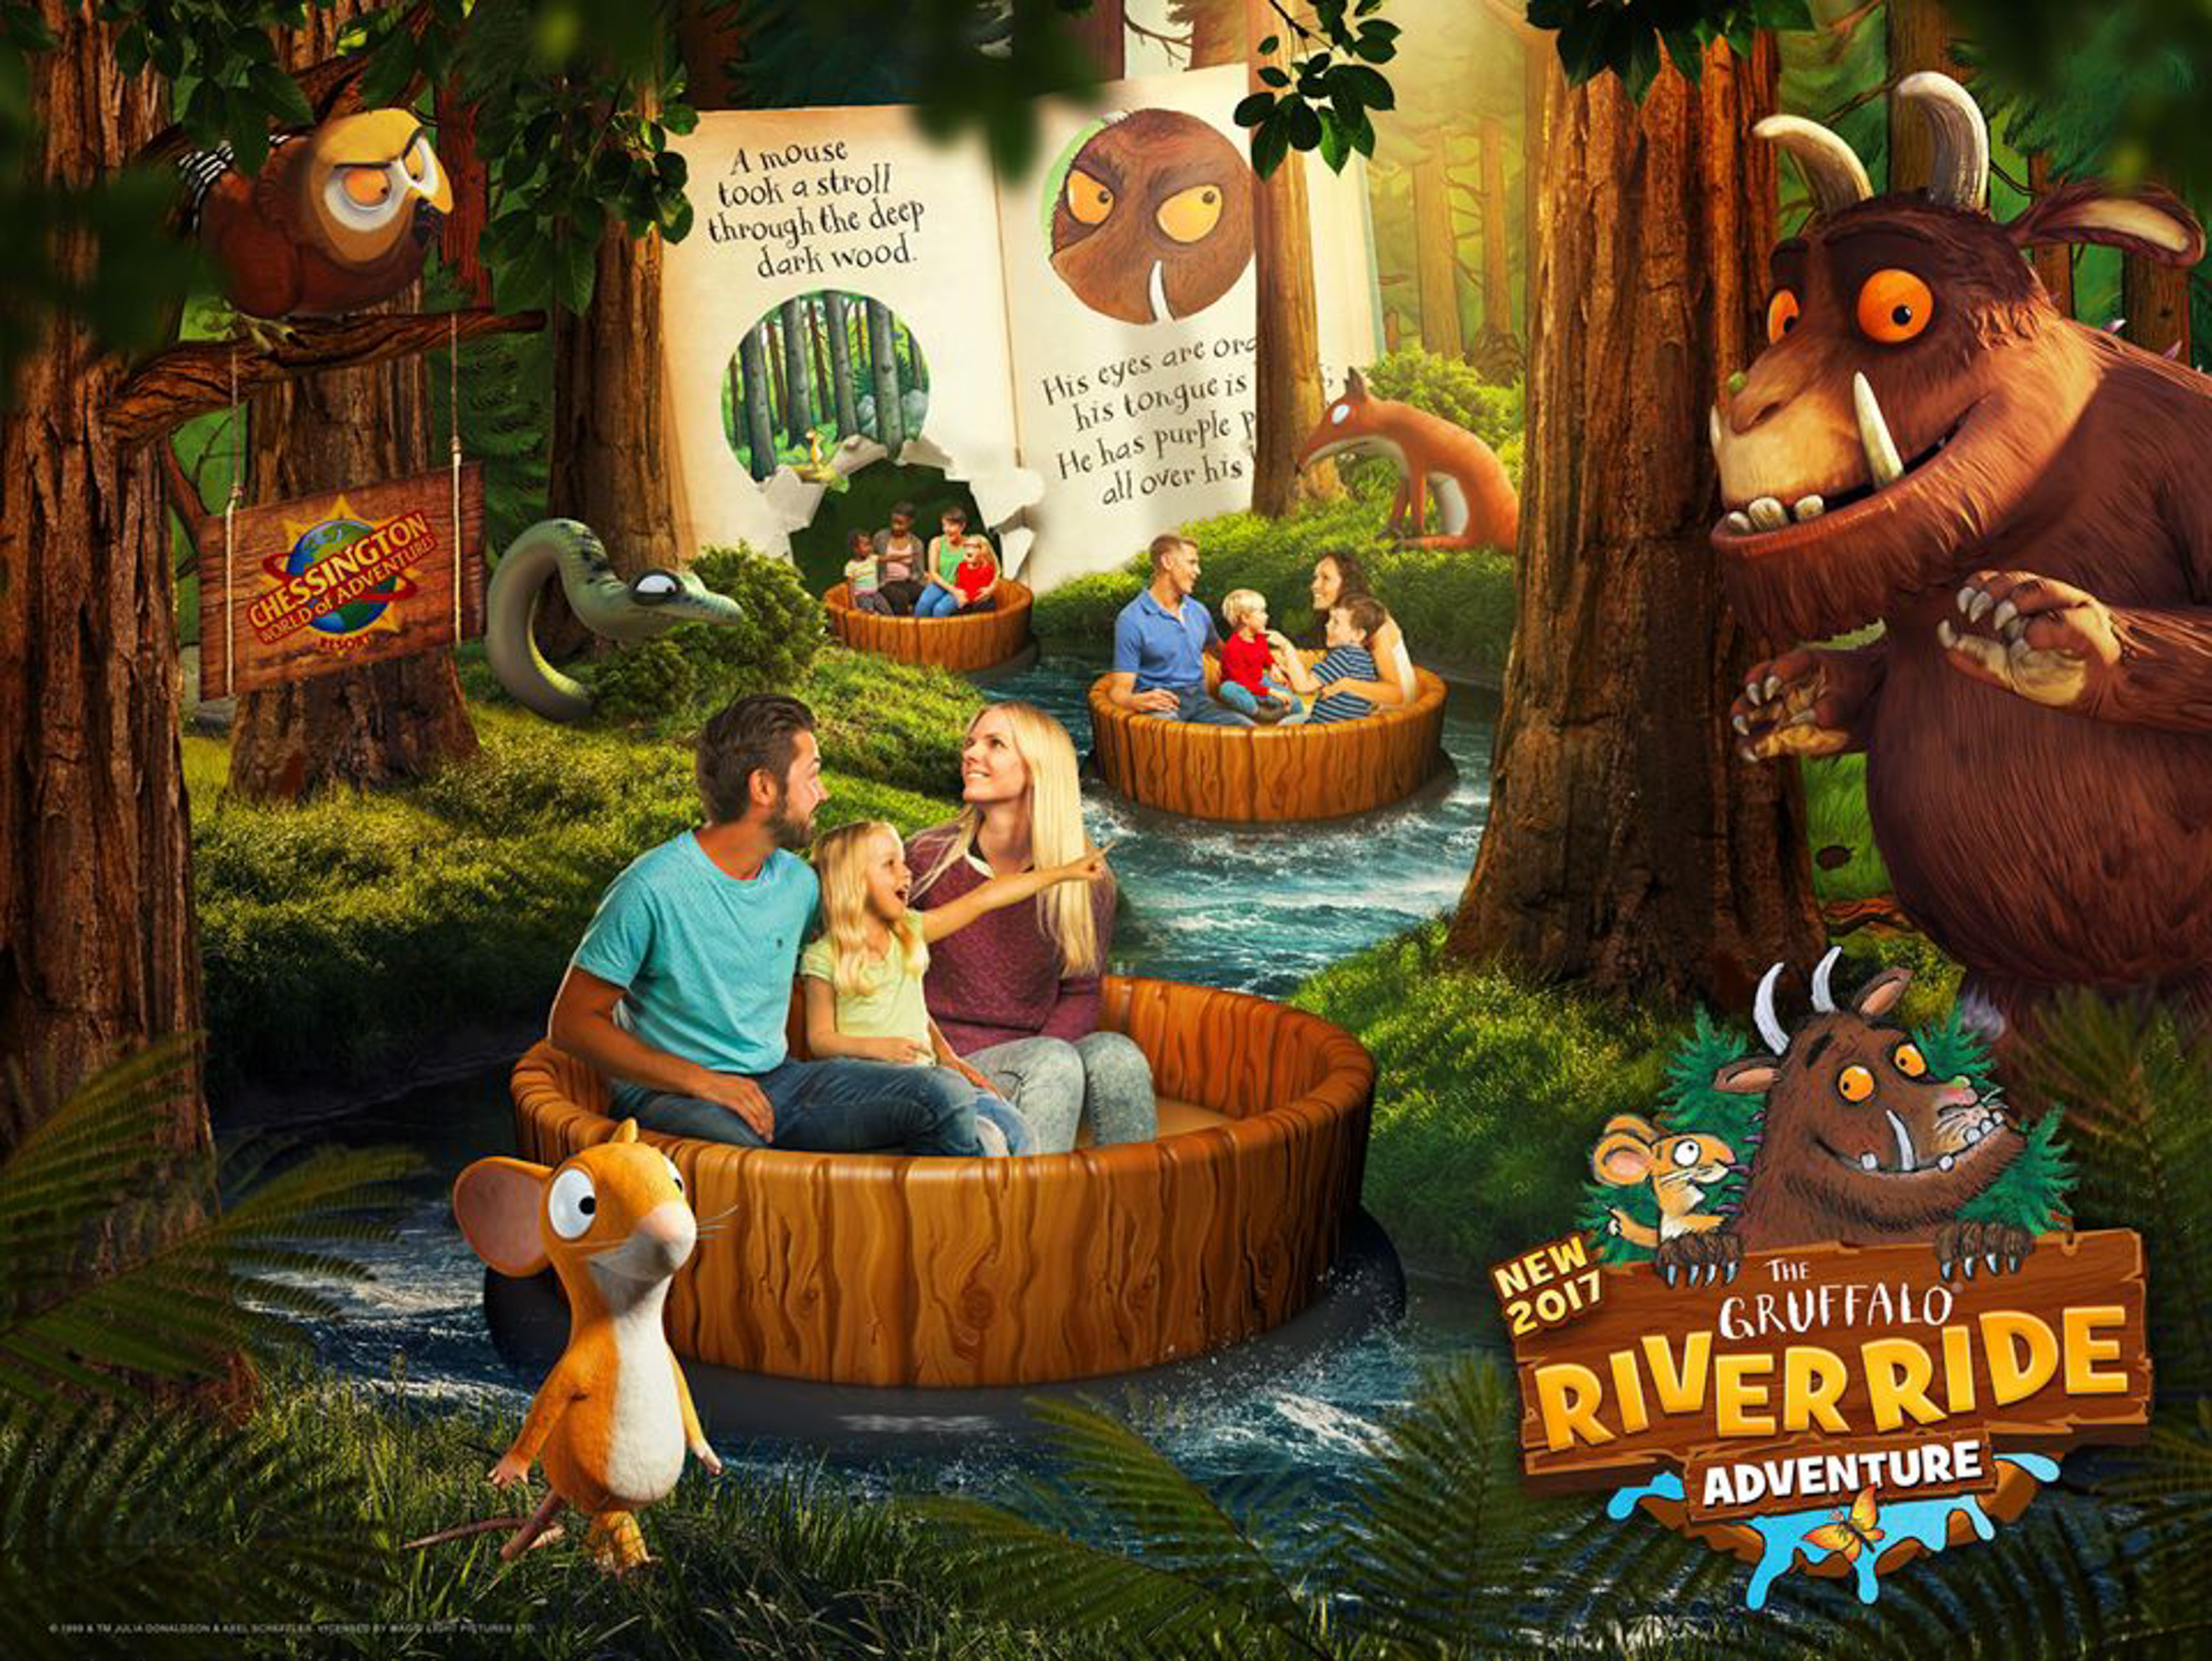 Gruffalo River Ride Adventure New For 2017